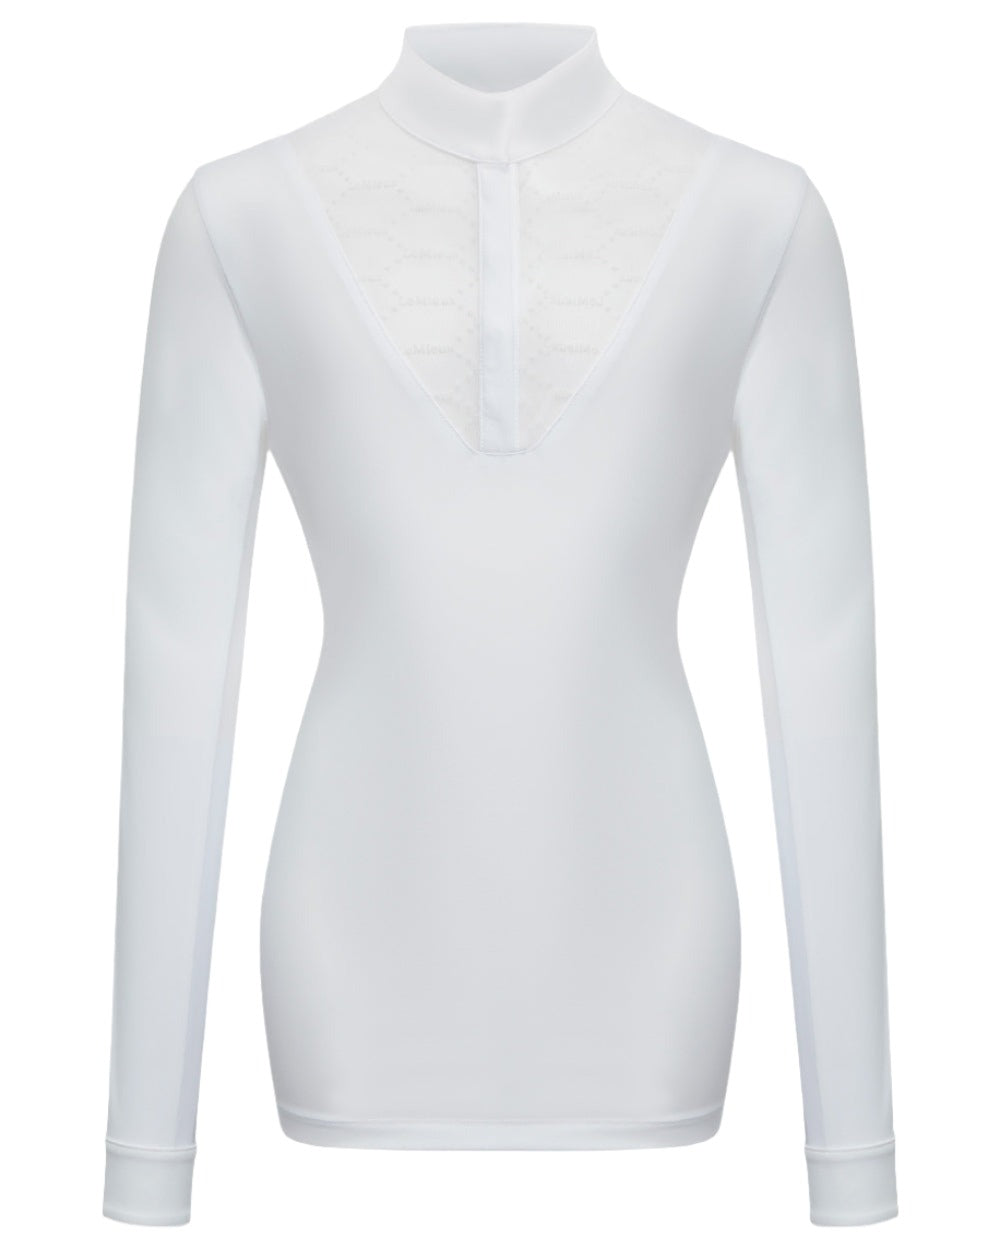 White coloured LeMieux Young Rider Eva Long Sleeve Show Shirt on white background 